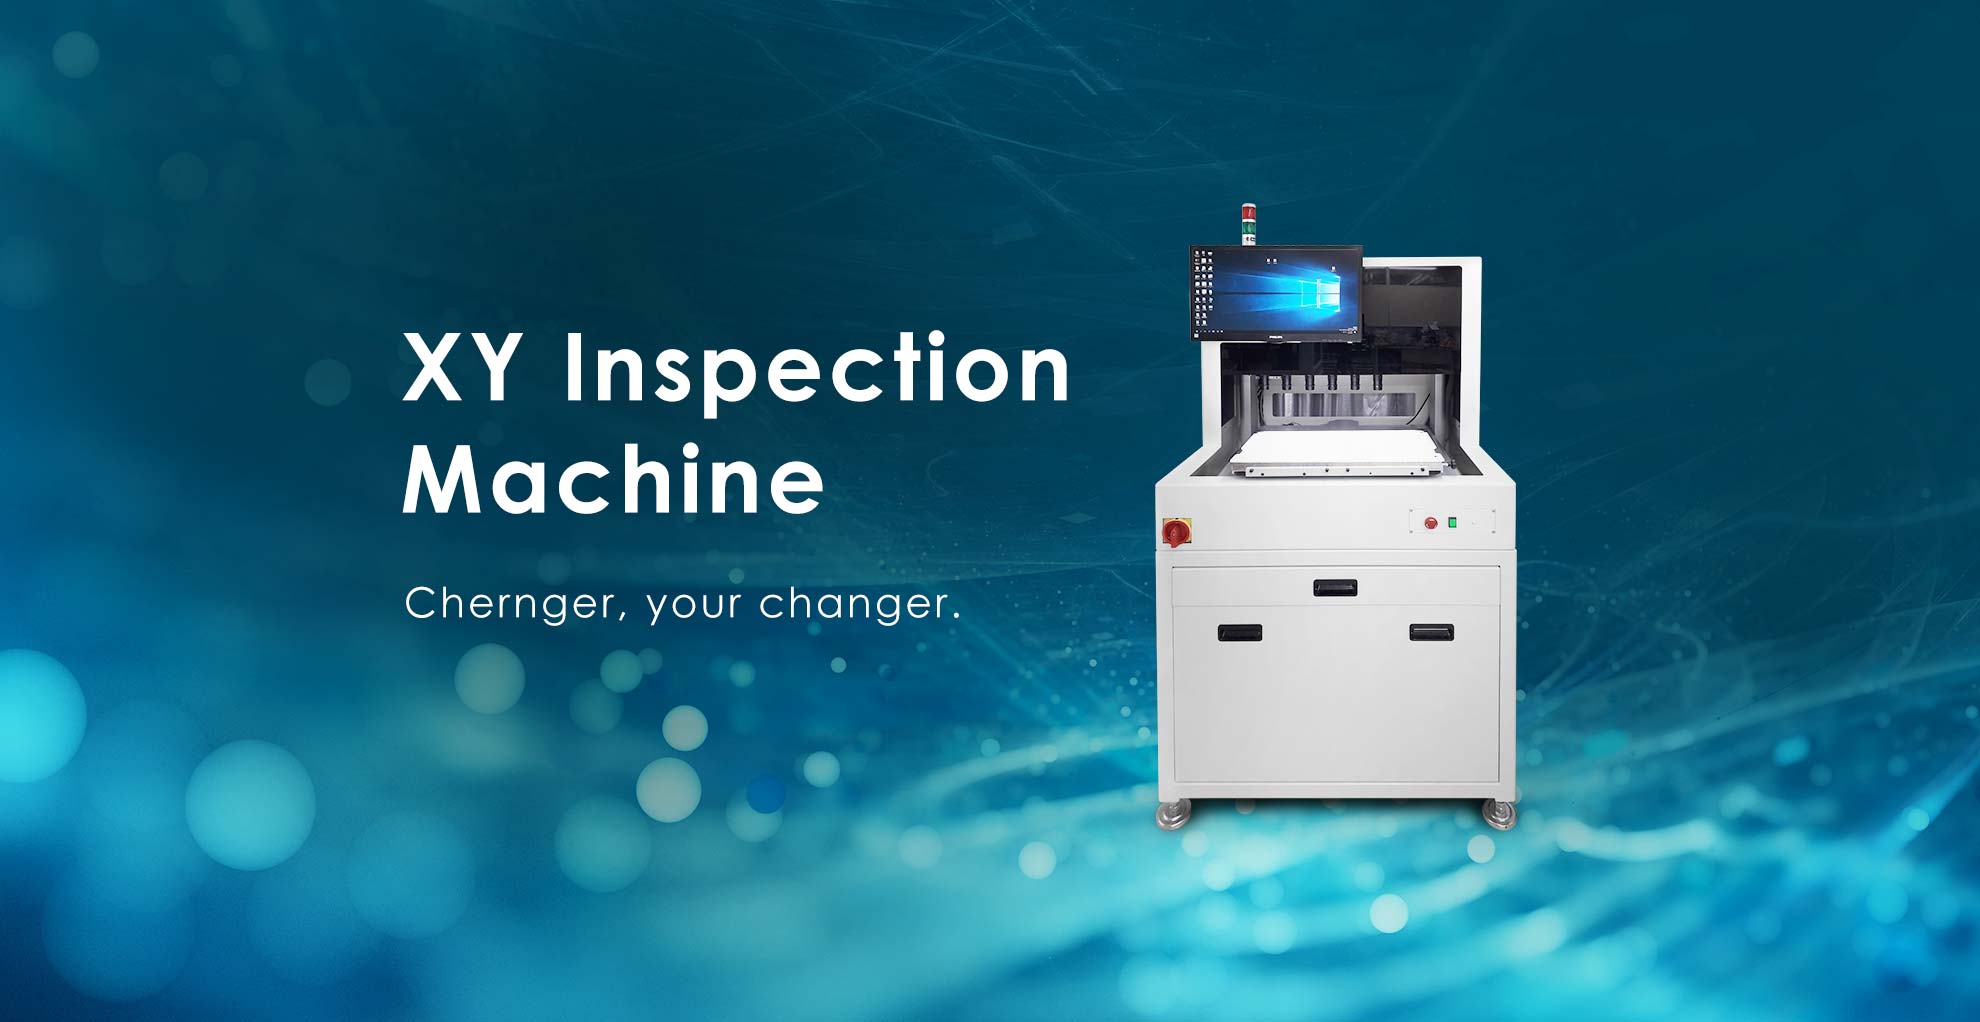 平移式檢查機 XY Inspection Machine